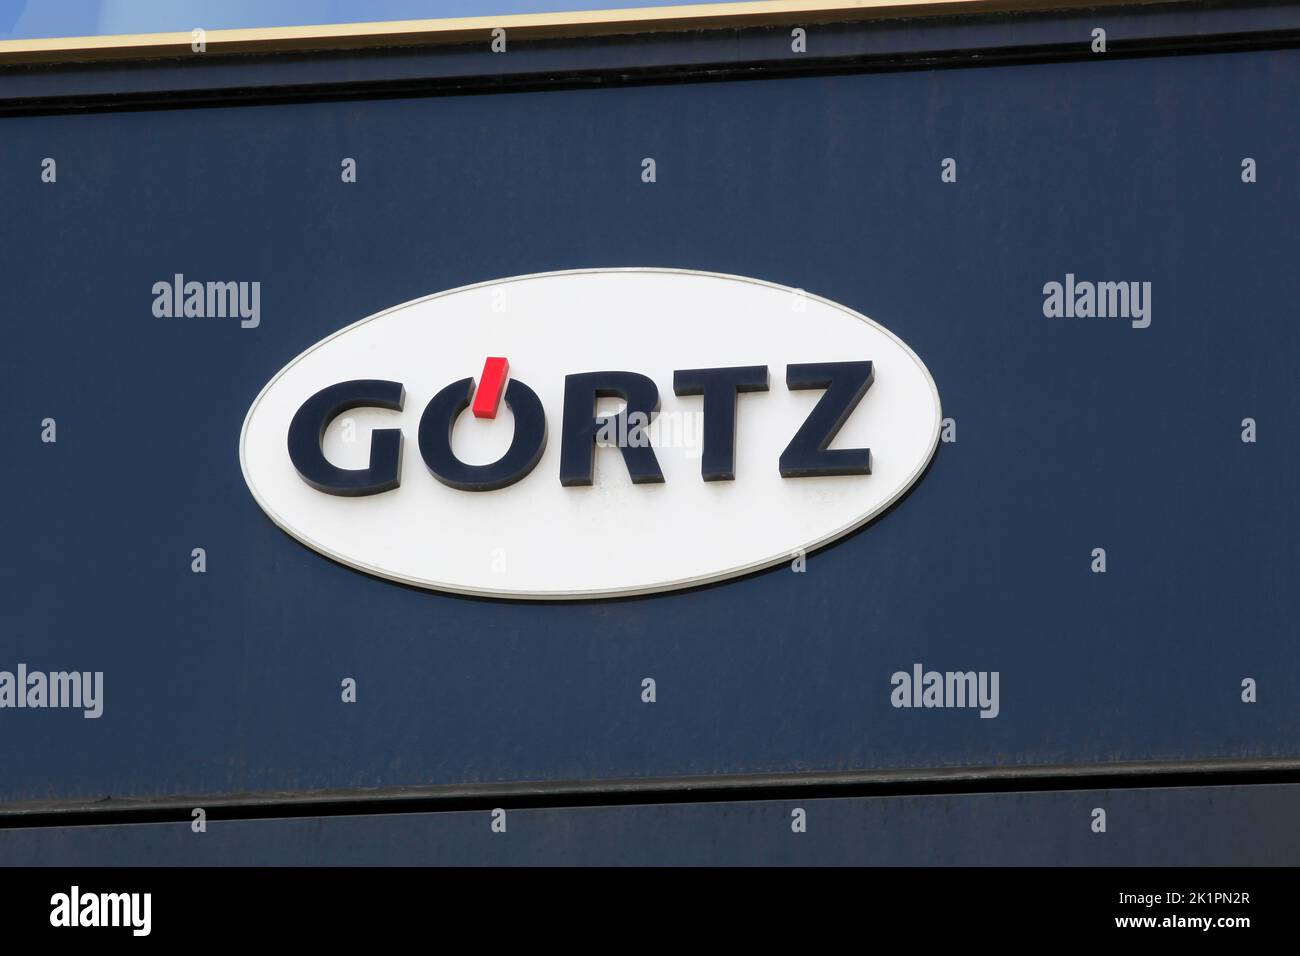 Berlín, Alemania - 13 de julio de 2020: Logotipo de Görtz en una pared. Görtz es una empresa alemana de comercio de calzado fundada en Barmbek, cerca de Hamburgo Foto de stock